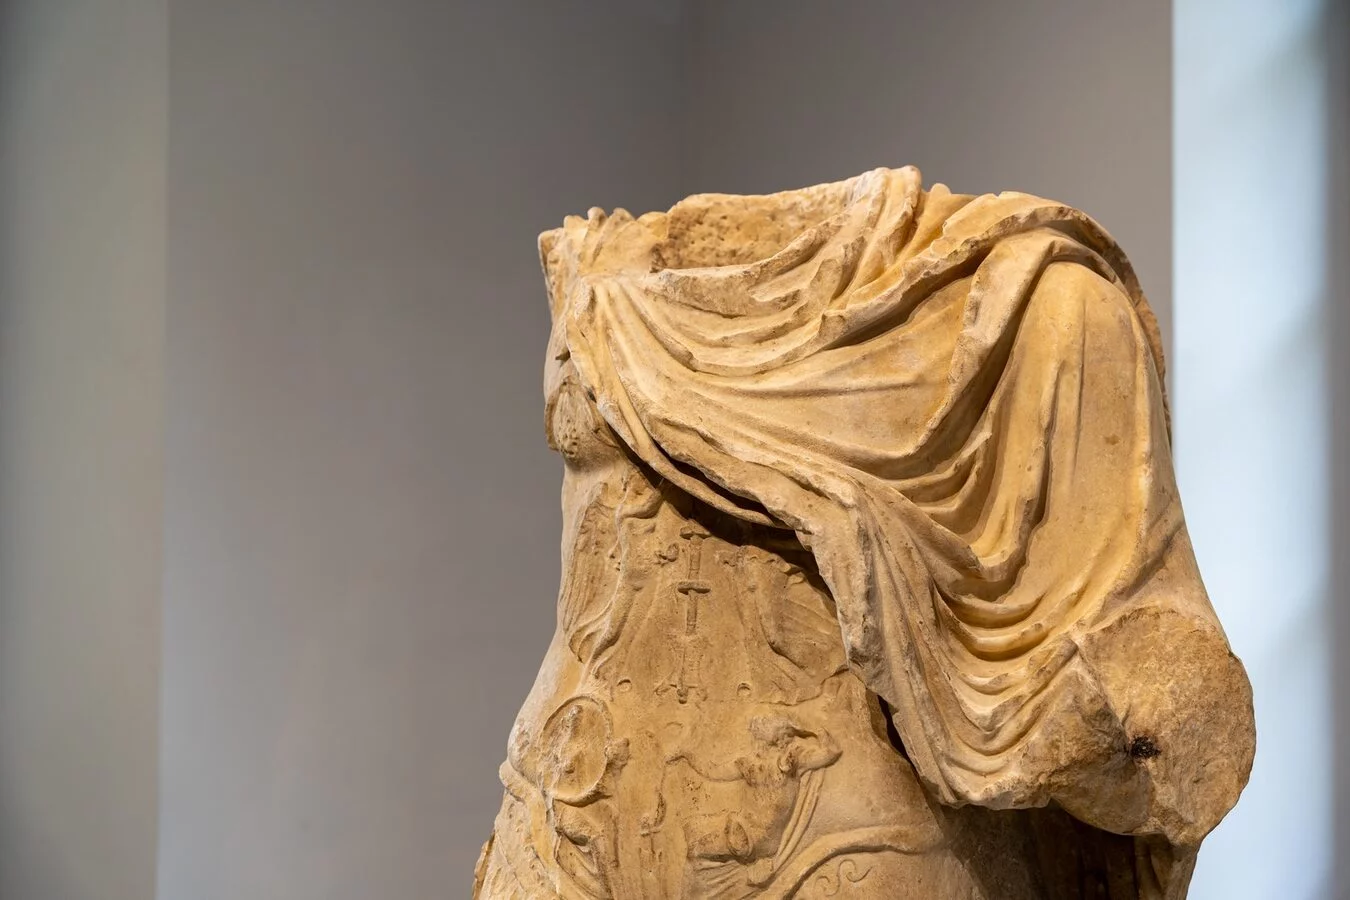 Romana marmora. Storie di imperatori, dei e cavatori